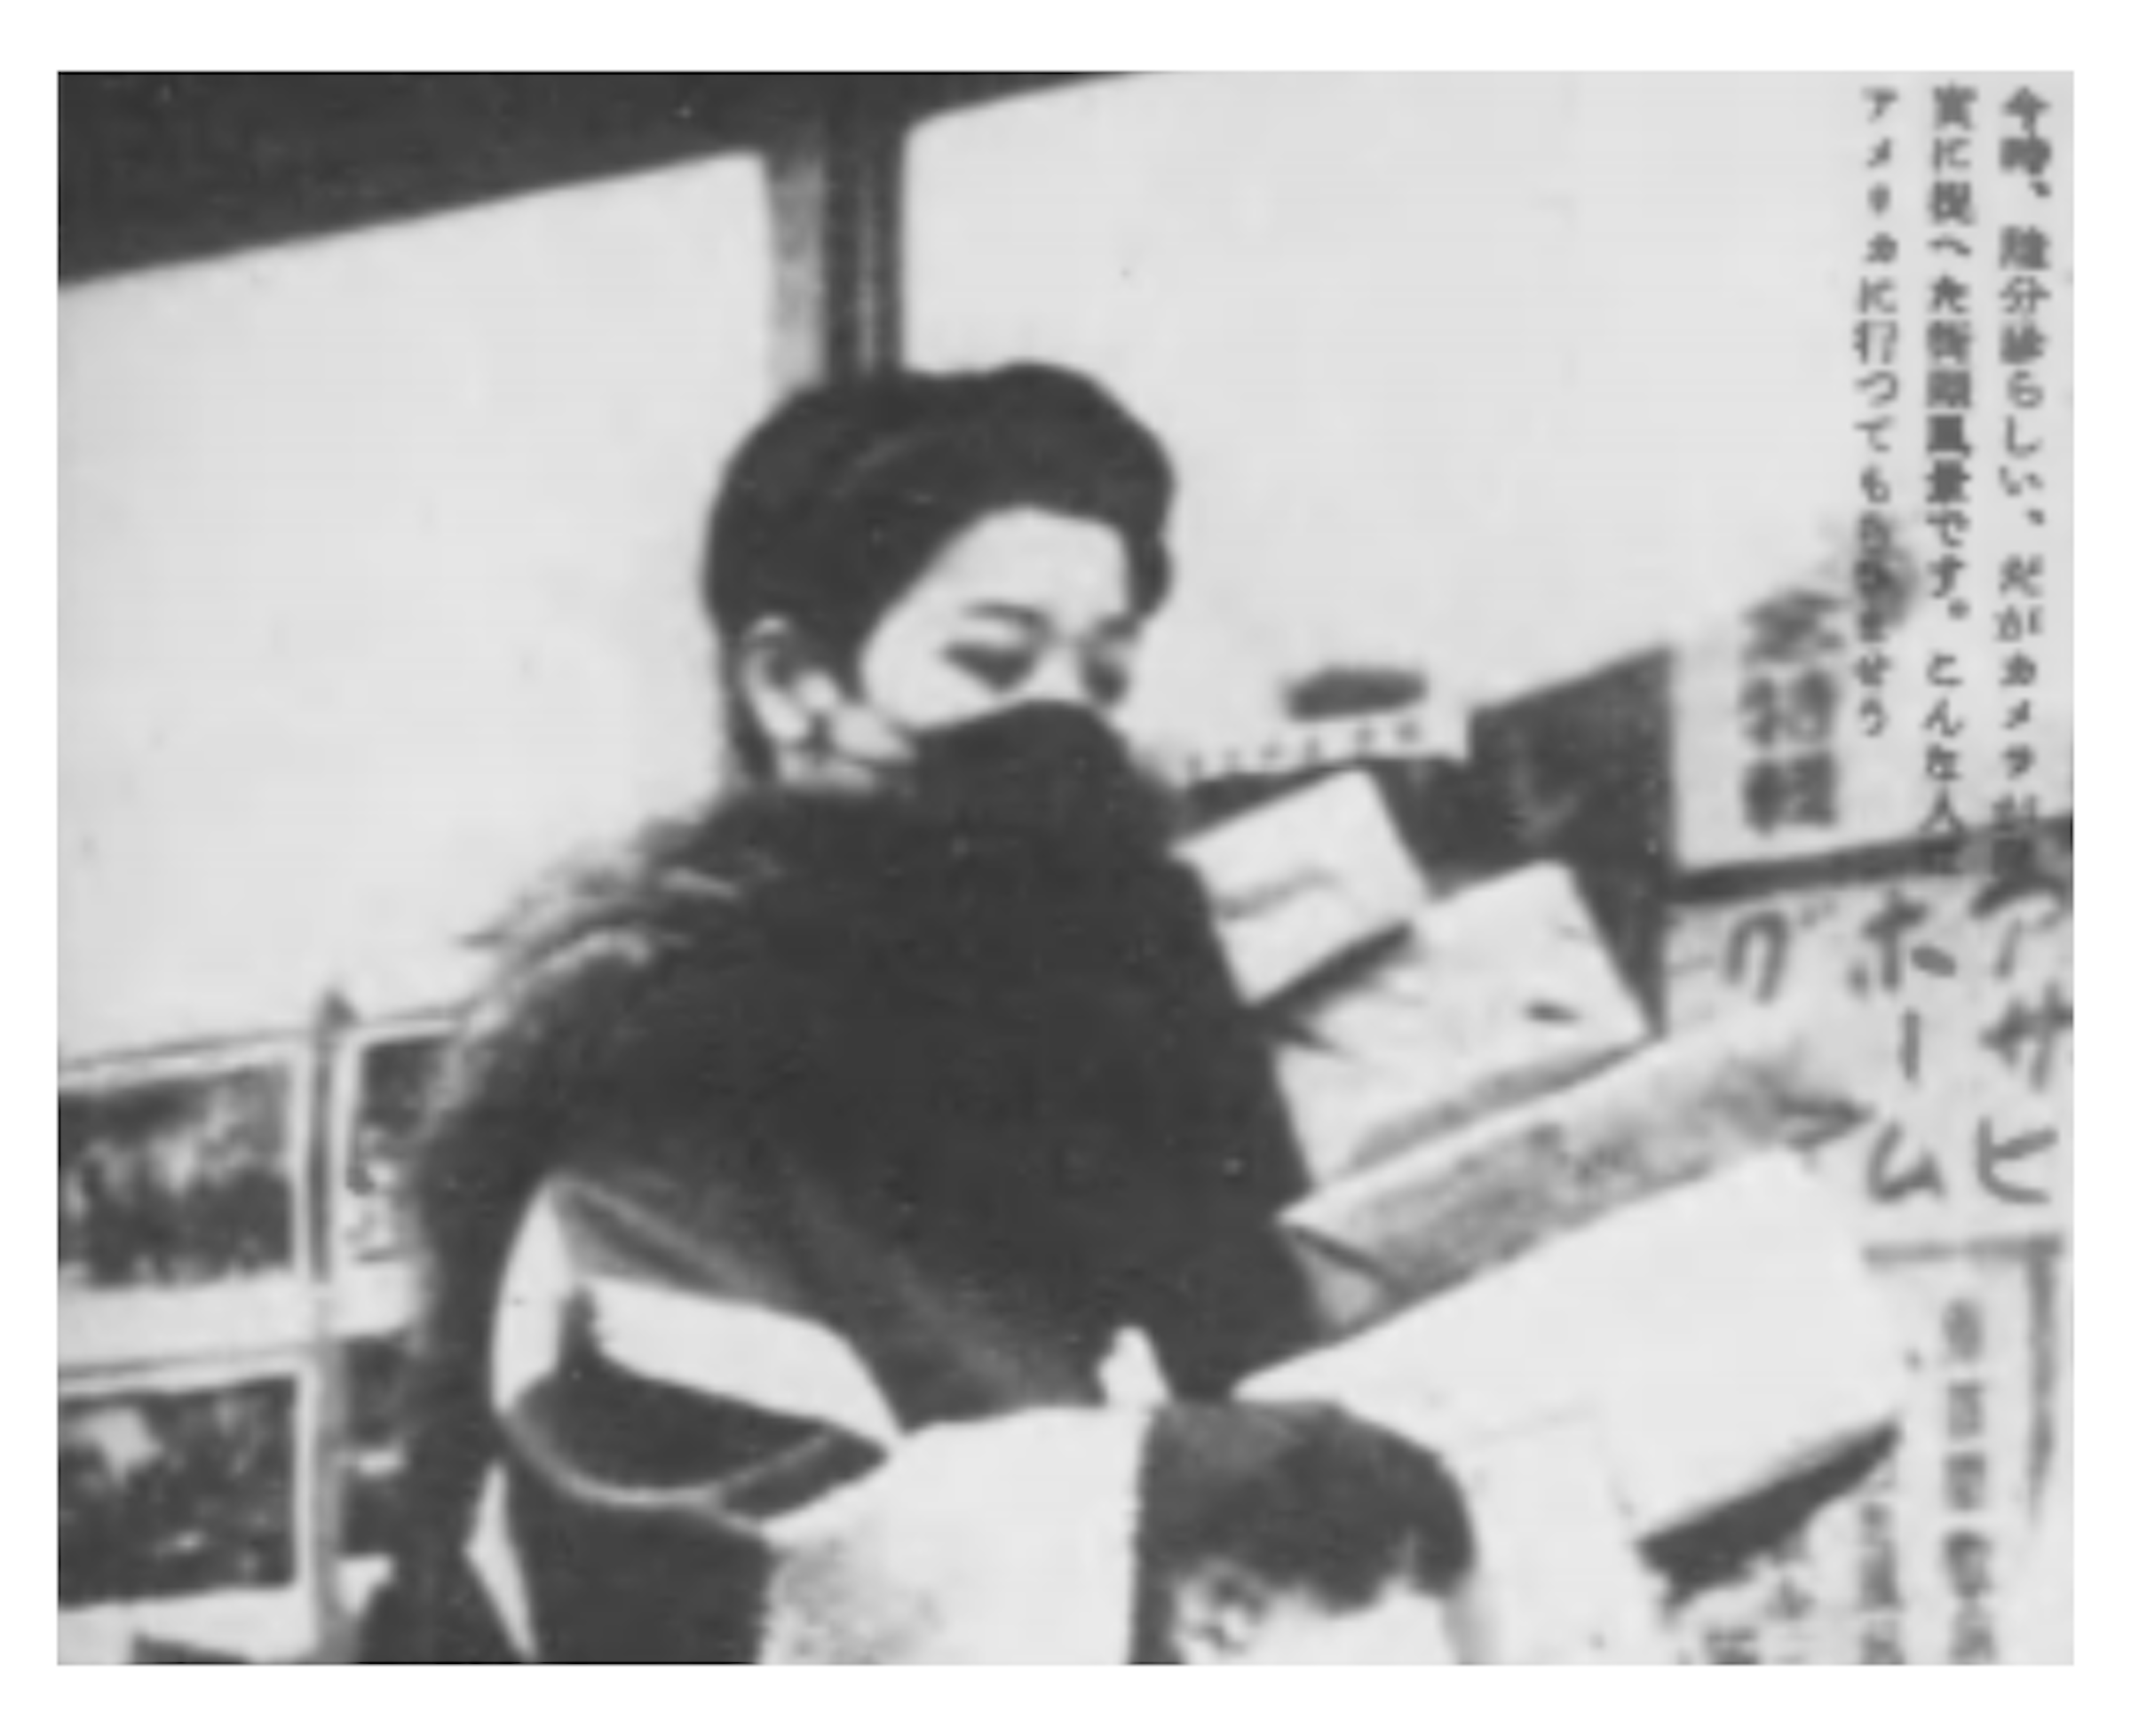 画像: 『写真週報』251号（1942年12月16日）、7頁 https://www.digital.archives.go.jp/img.pdf/3693714